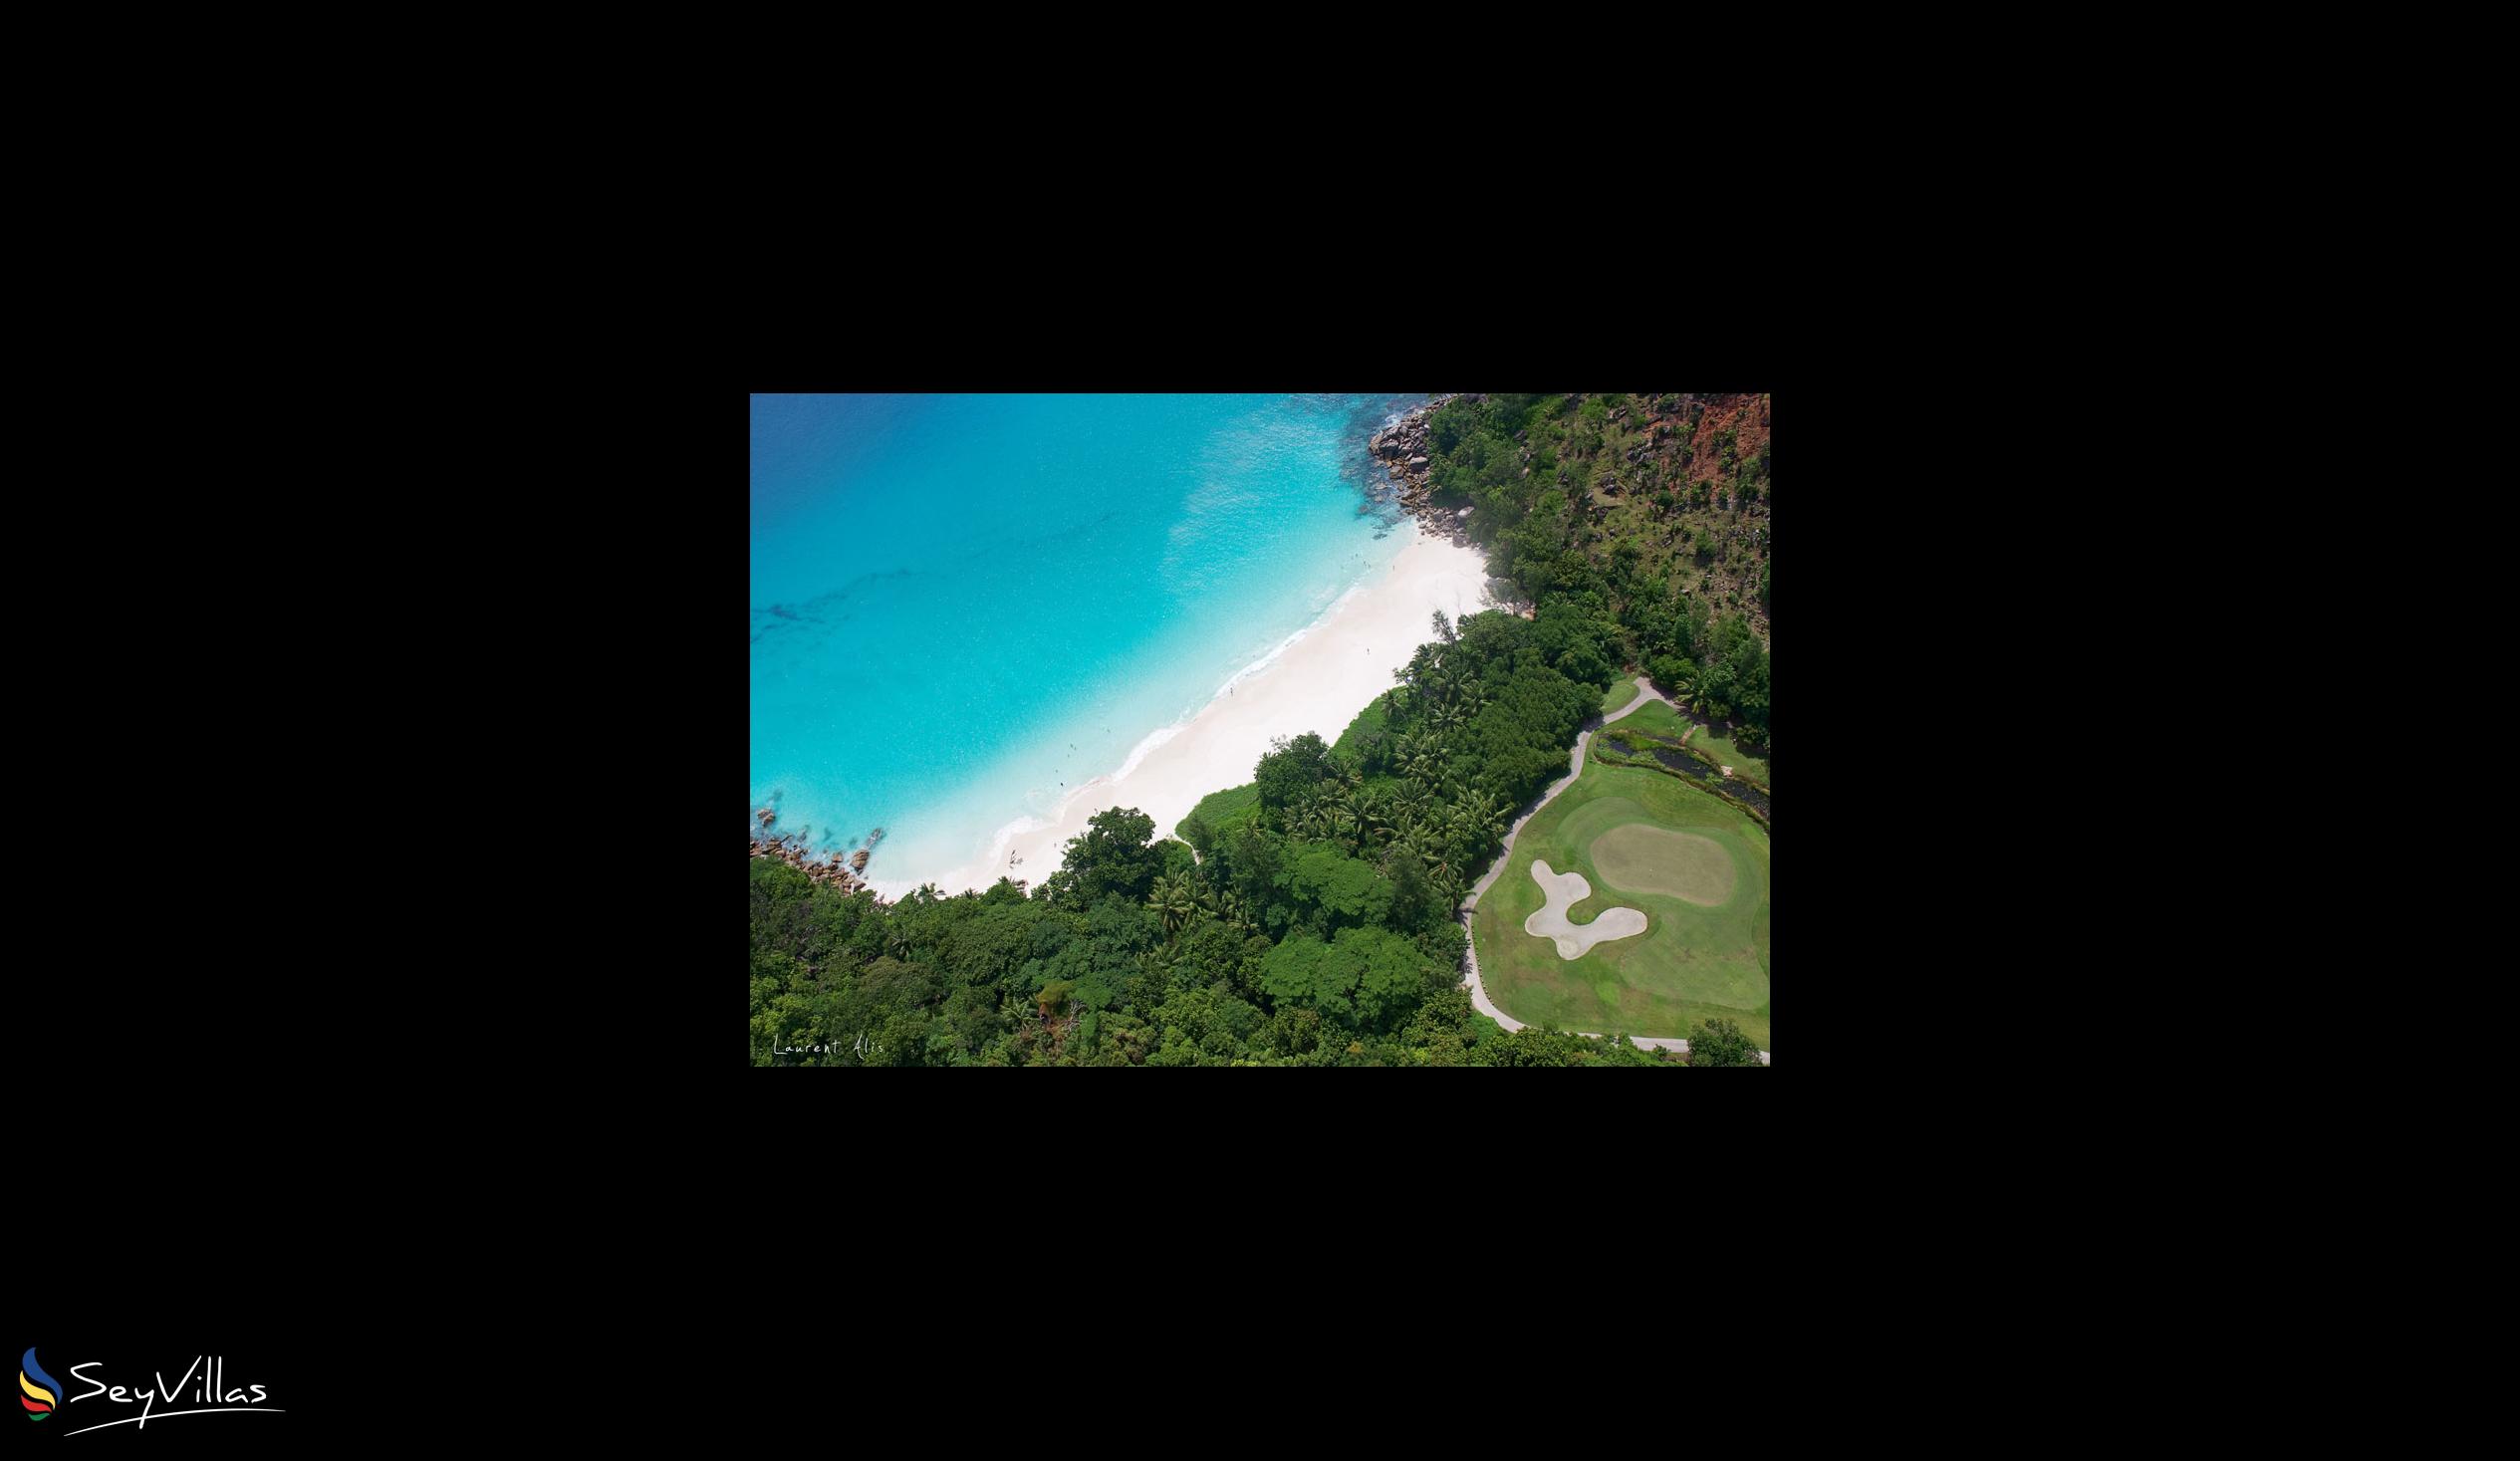 Foto 34: Silhouette Sea Pearl - Strände - Seychellen (Seychellen)